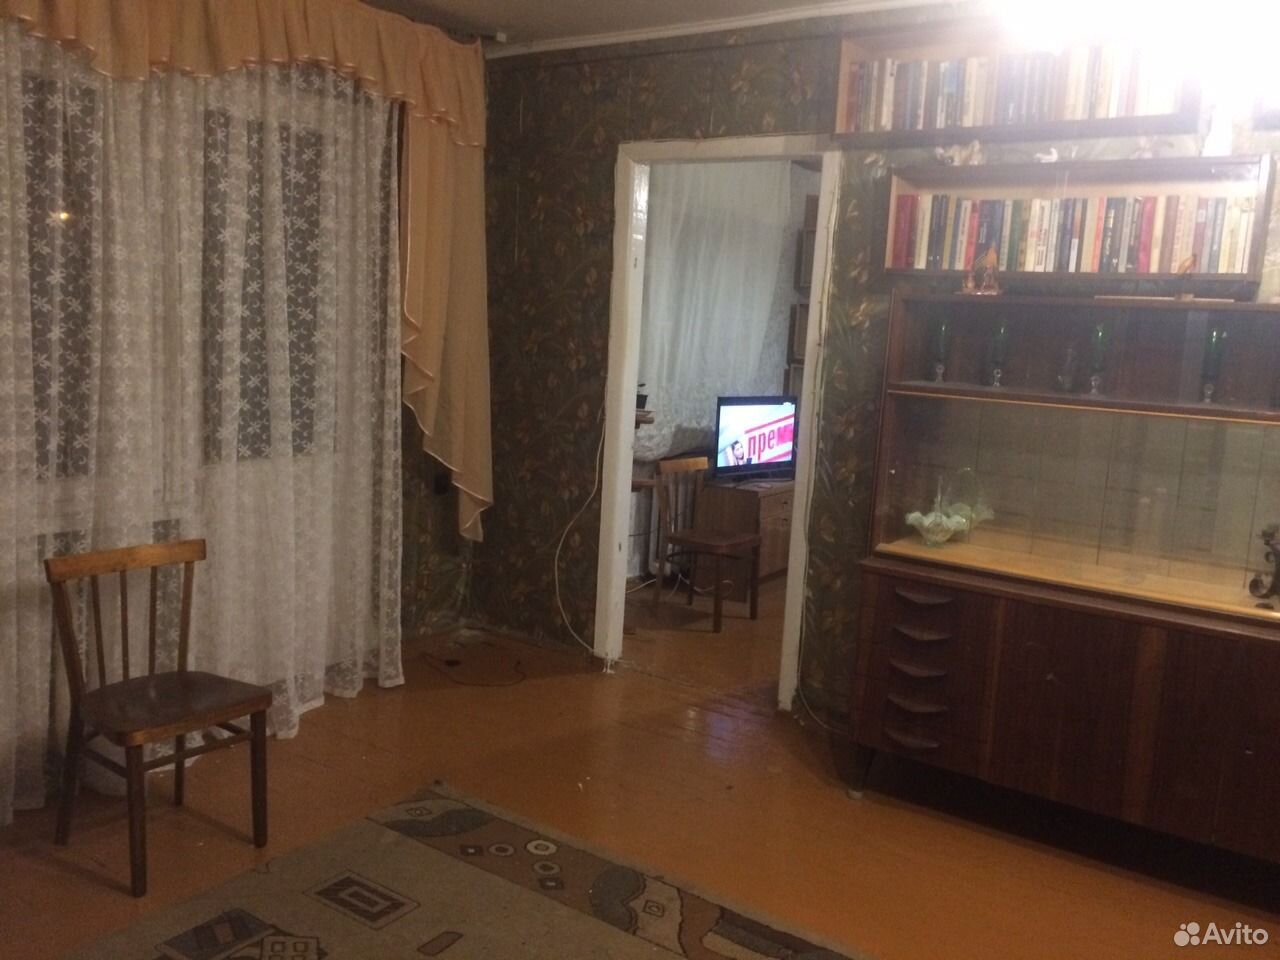 Дешевые 3-х комнатные квартиру в Воронеже купить левый берег. Купить вторичку на левом берегу